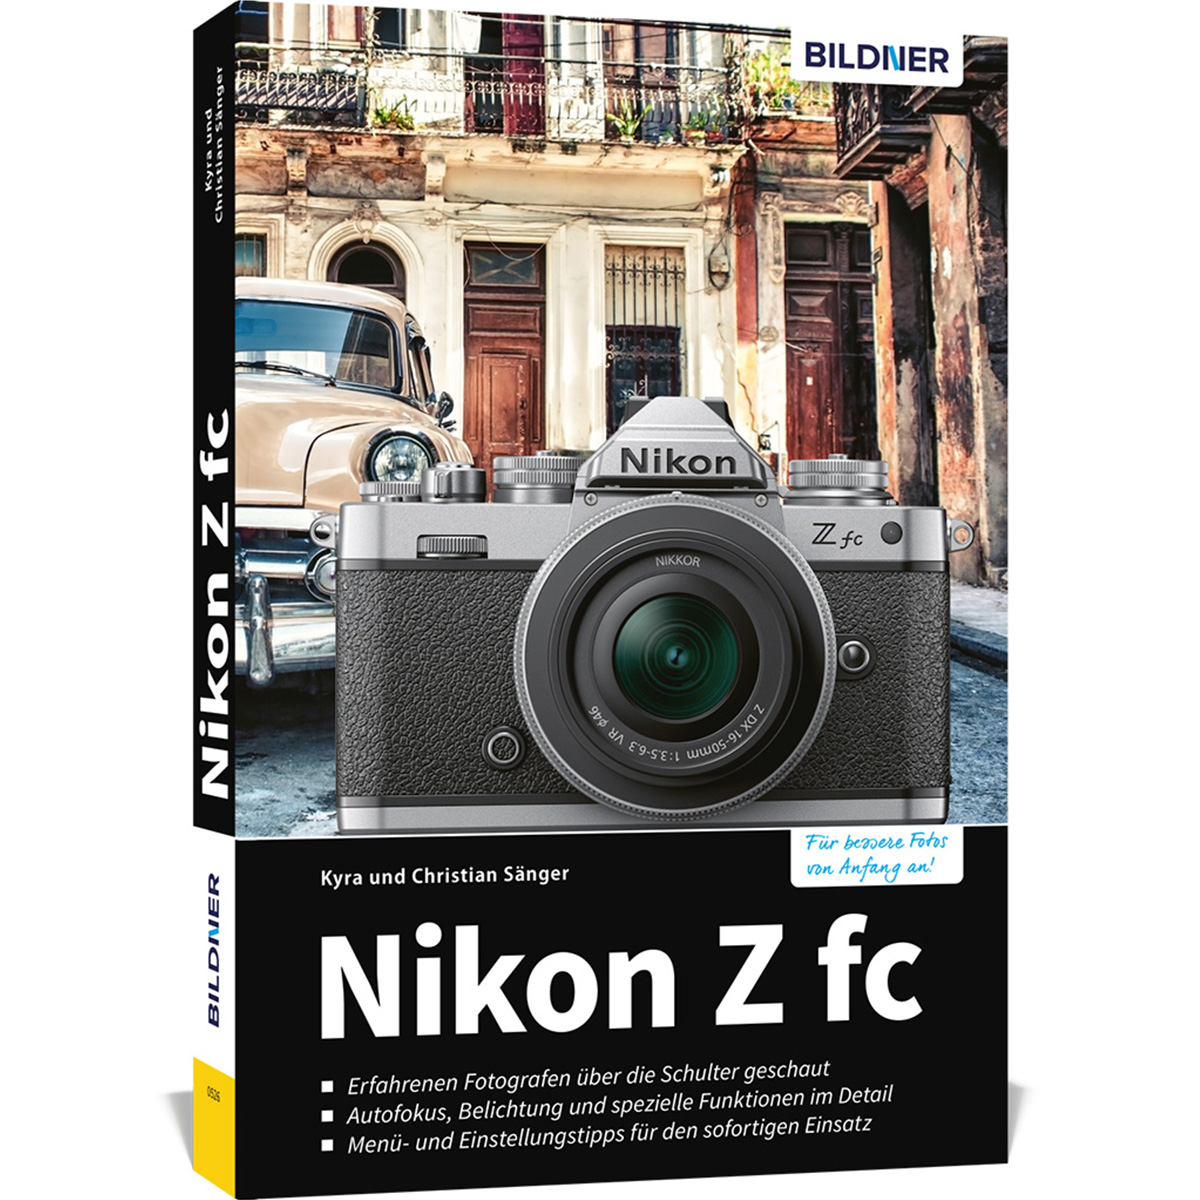 Nikon Z fc - Das Kamera zu Praxisbuch Ihrer umfangreiche